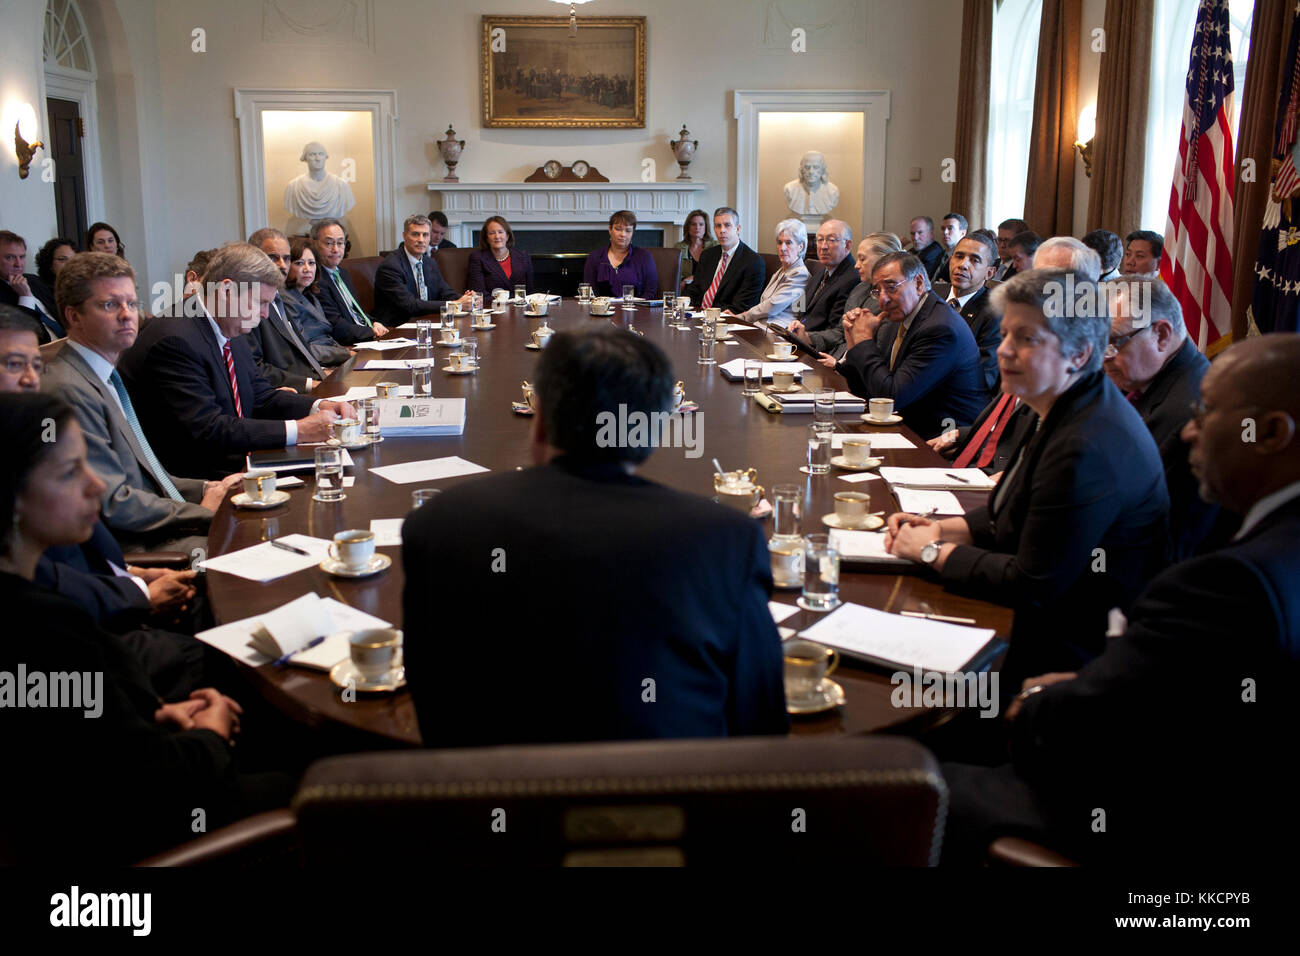 Le président Barack Obama et d'autres écouter comme chef d'état-major jack lew, centre, prend la parole lors d'une réunion du Conseil des ministres dans la salle du cabinet de la maison blanche, jan. 31, 2012. Banque D'Images